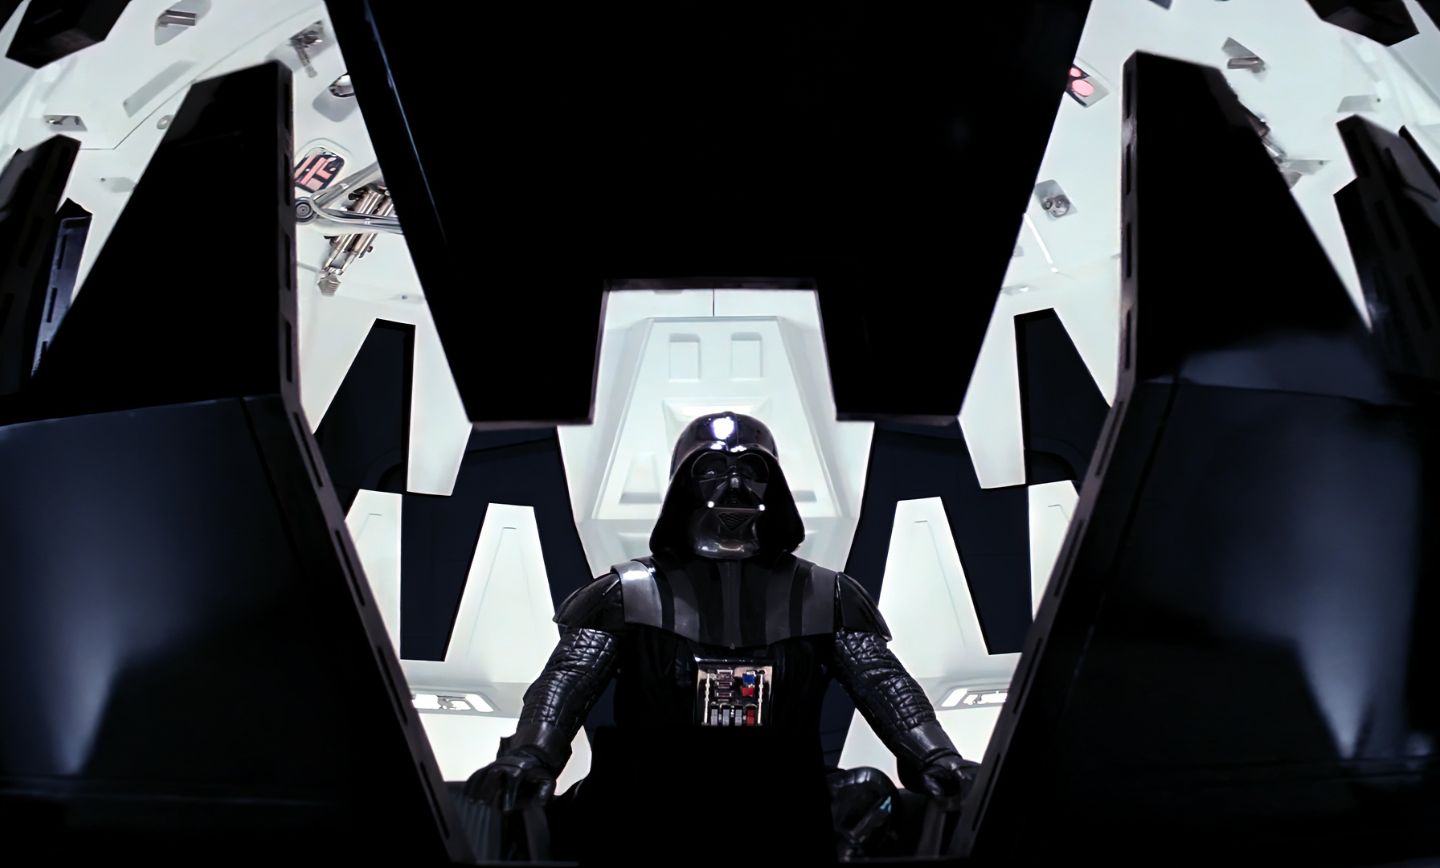 دارث ویدر در جنگ ستارگان قسمت پنجم_ امپراطوری ضربه میزند (Star Wars Episode V_ The Empire Strikes Back)